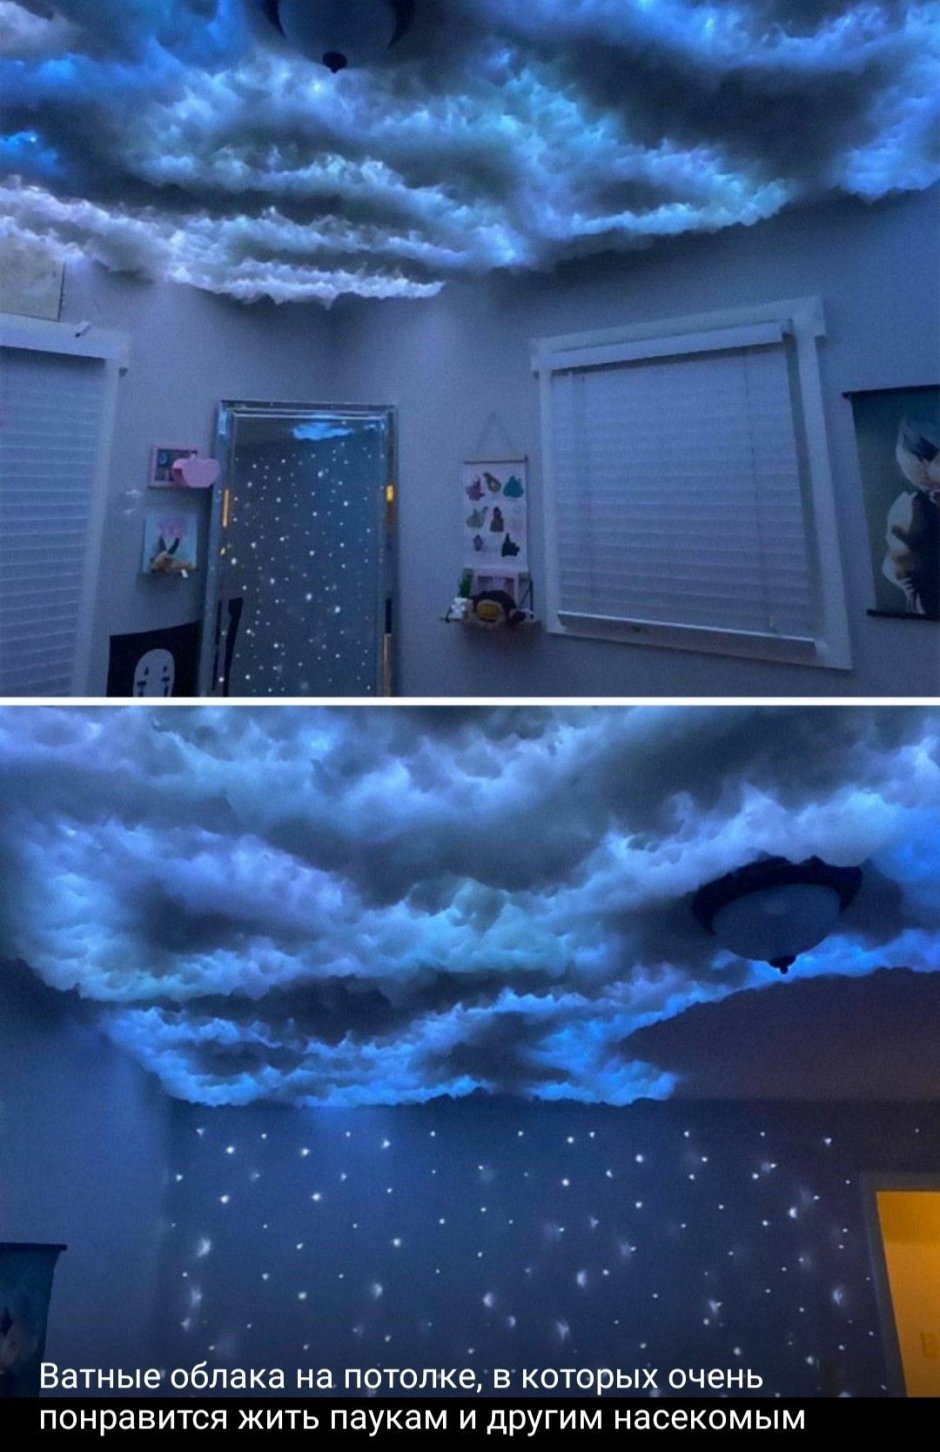 Светящиеся облака на потолке